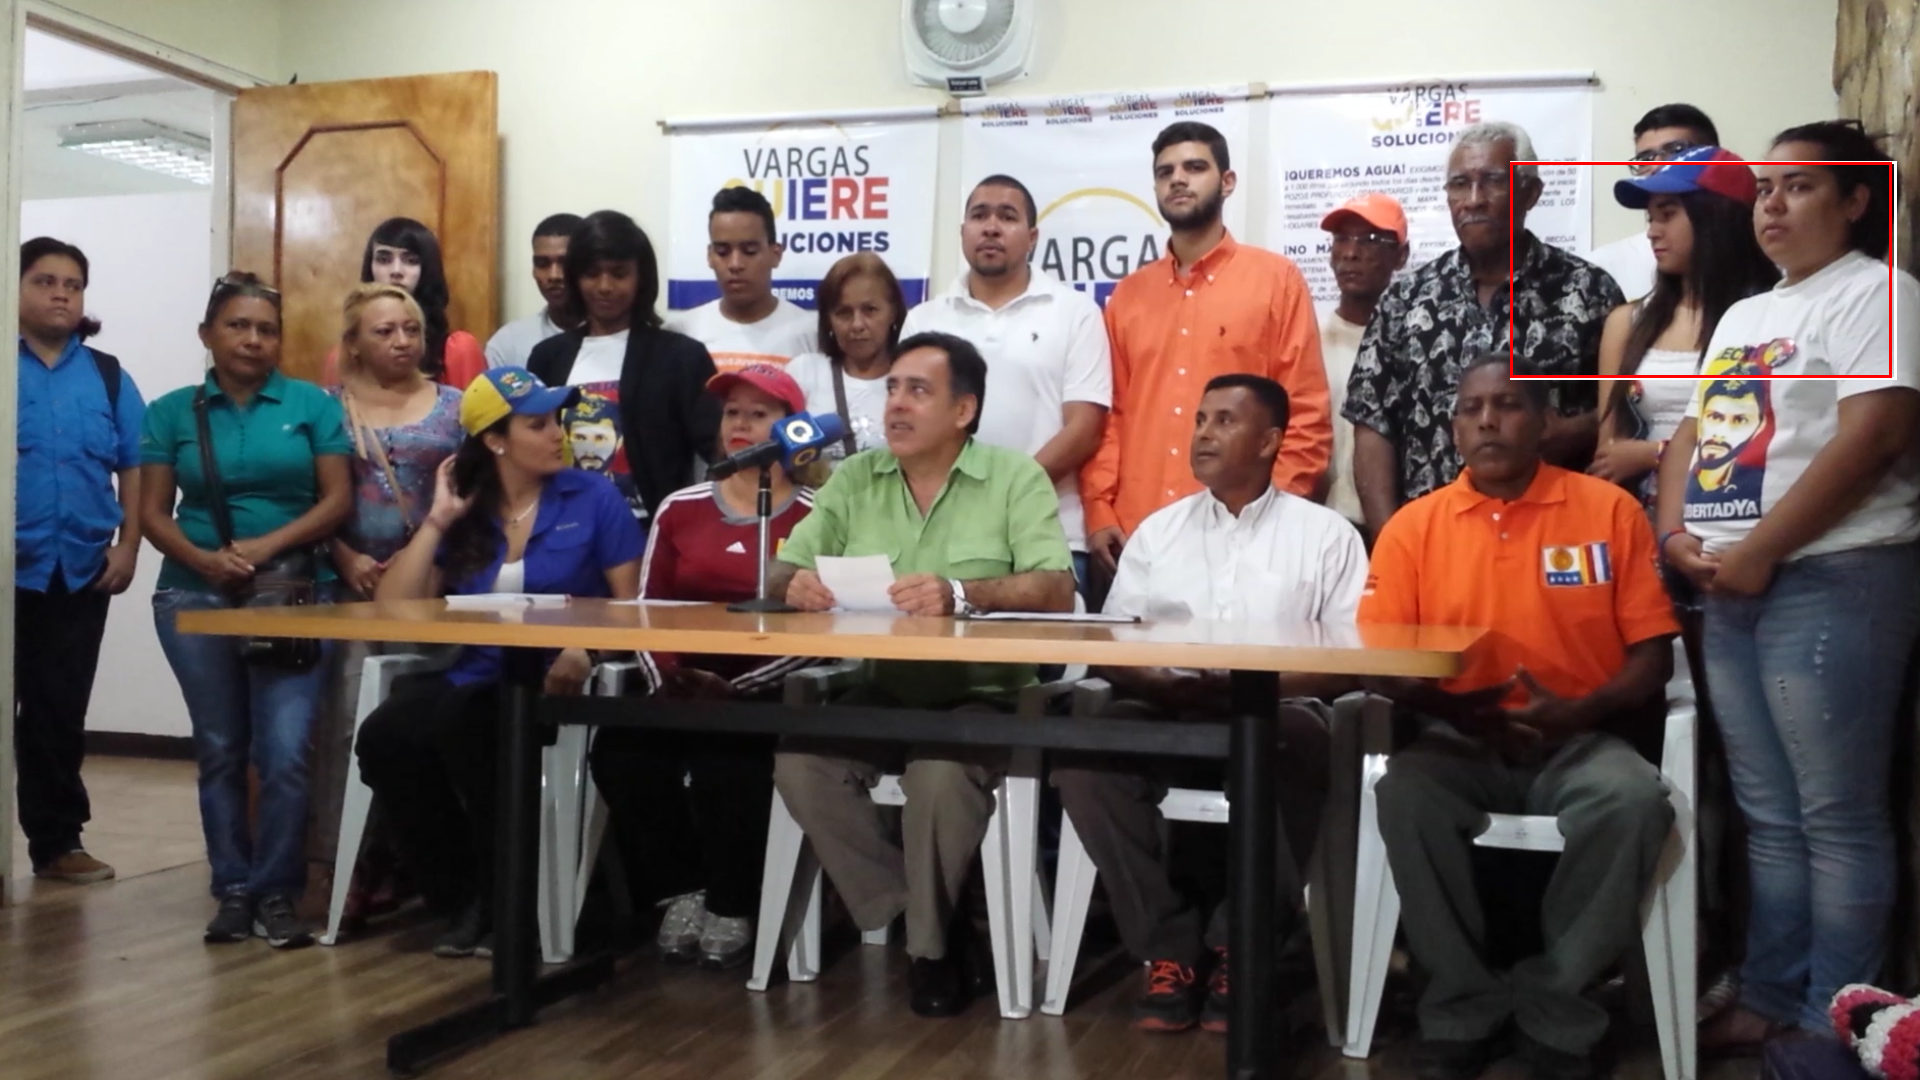 Roberto Smith: Recogeremos 120.000 firmas para exigir agua, aseo, transporte y seguridad para Vargas